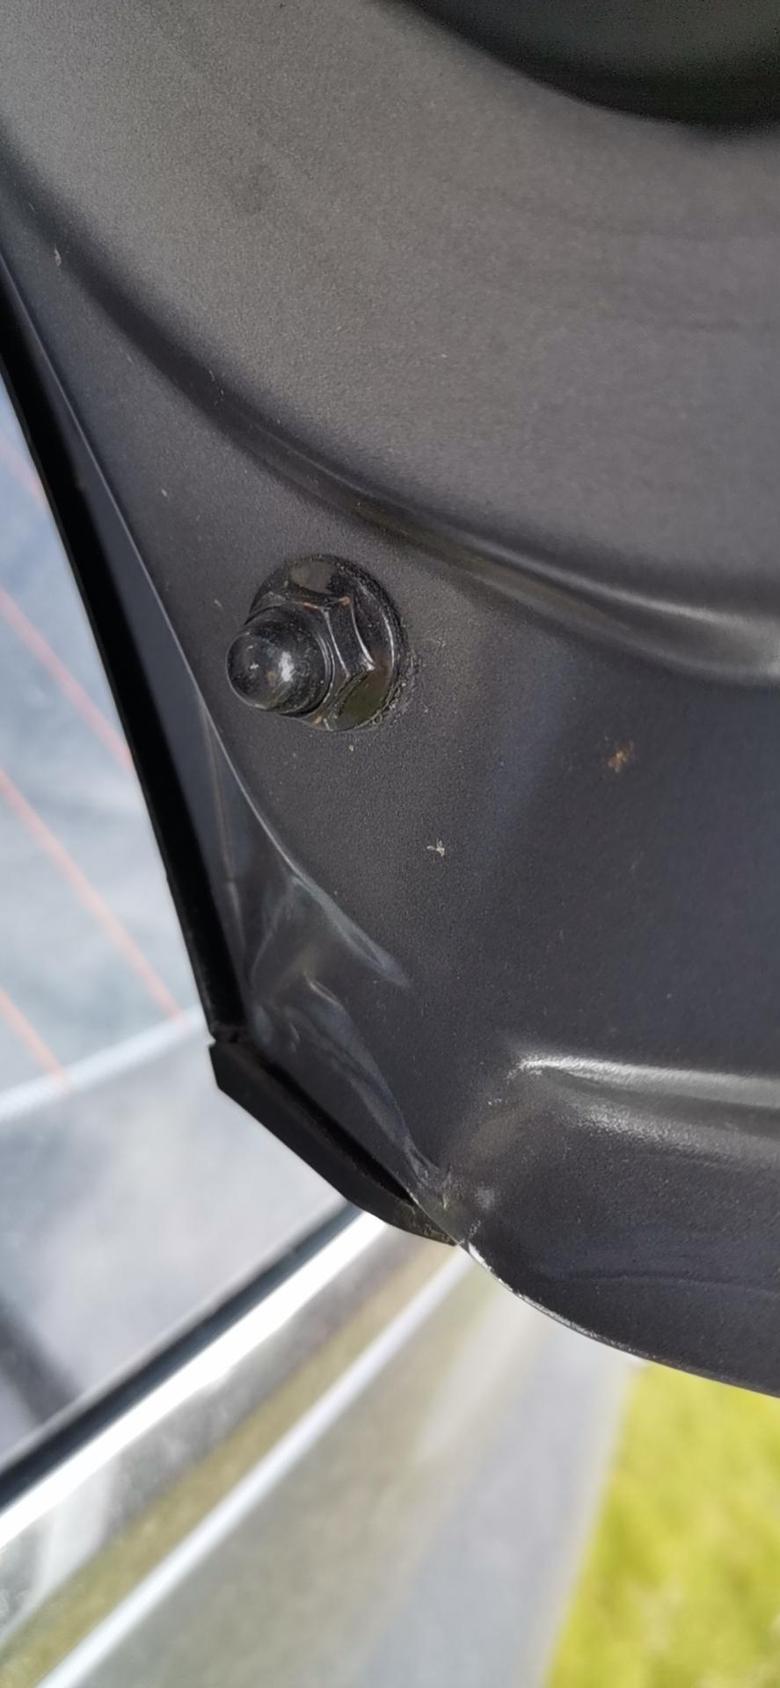 k5凯酷 各位车主后备箱螺丝可都有拧动痕迹啊，群里车友刚发现的，去年10月的车，我的是今年7月的，有锈迹和掉漆现象